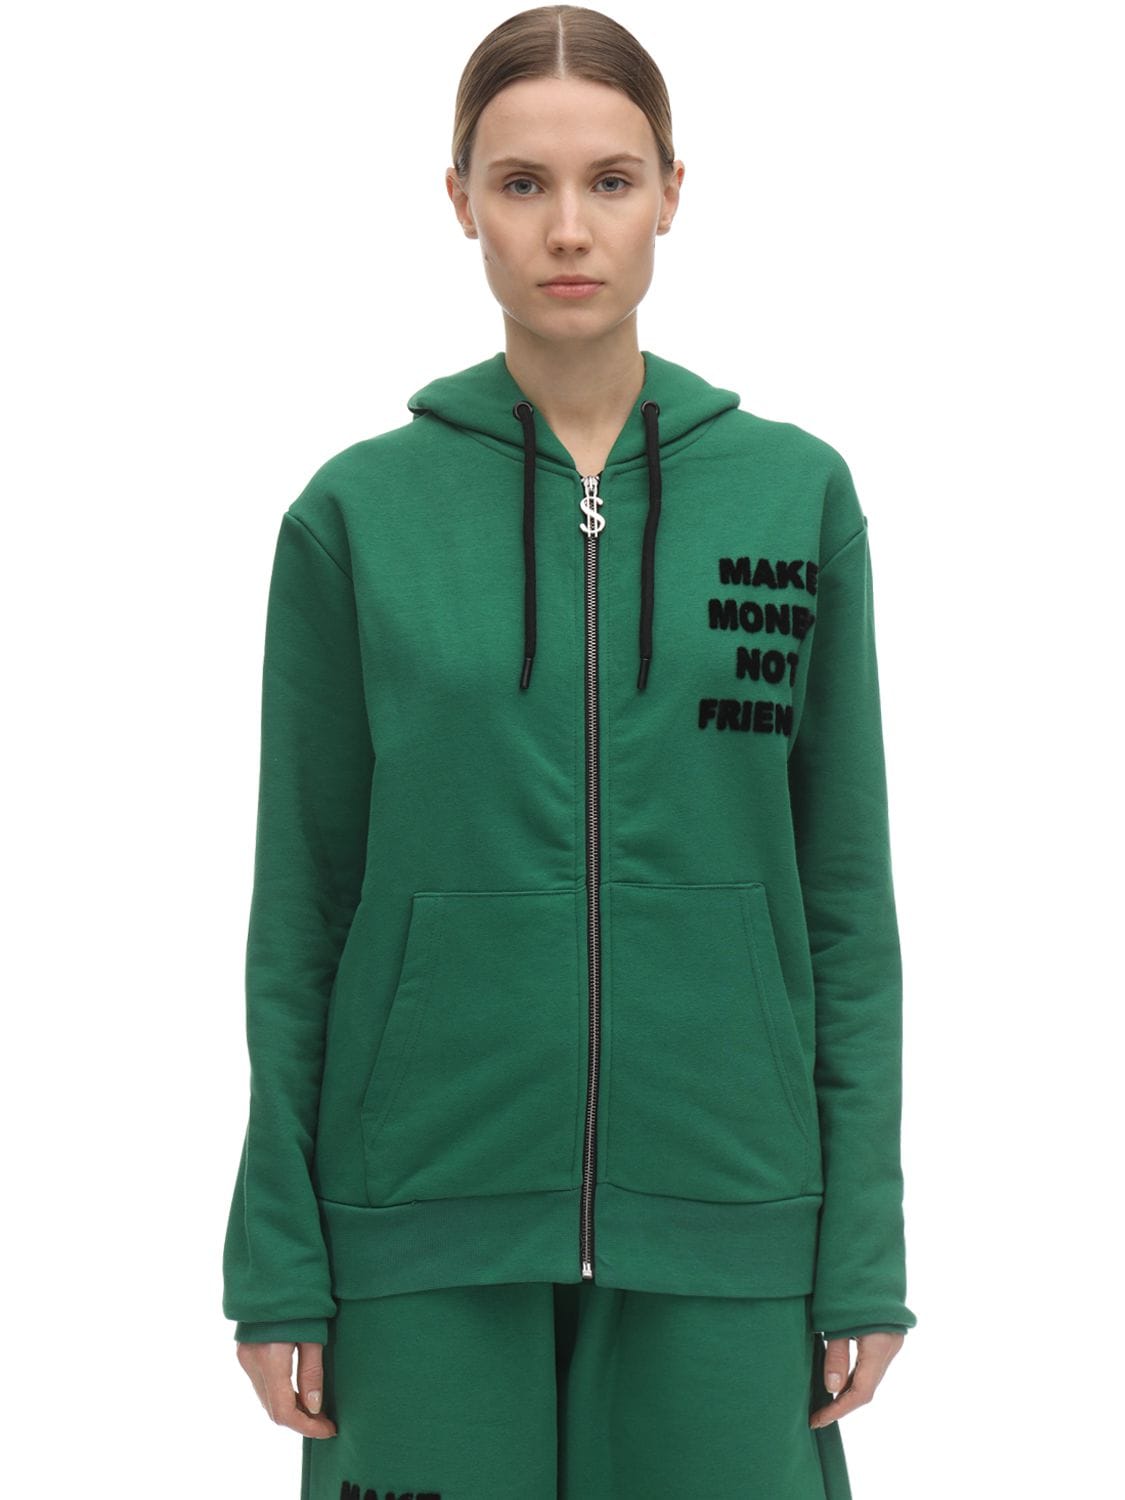 Make Money Not Friends Logo Zip-up Cotton Sweatshirt Hoodie In Green